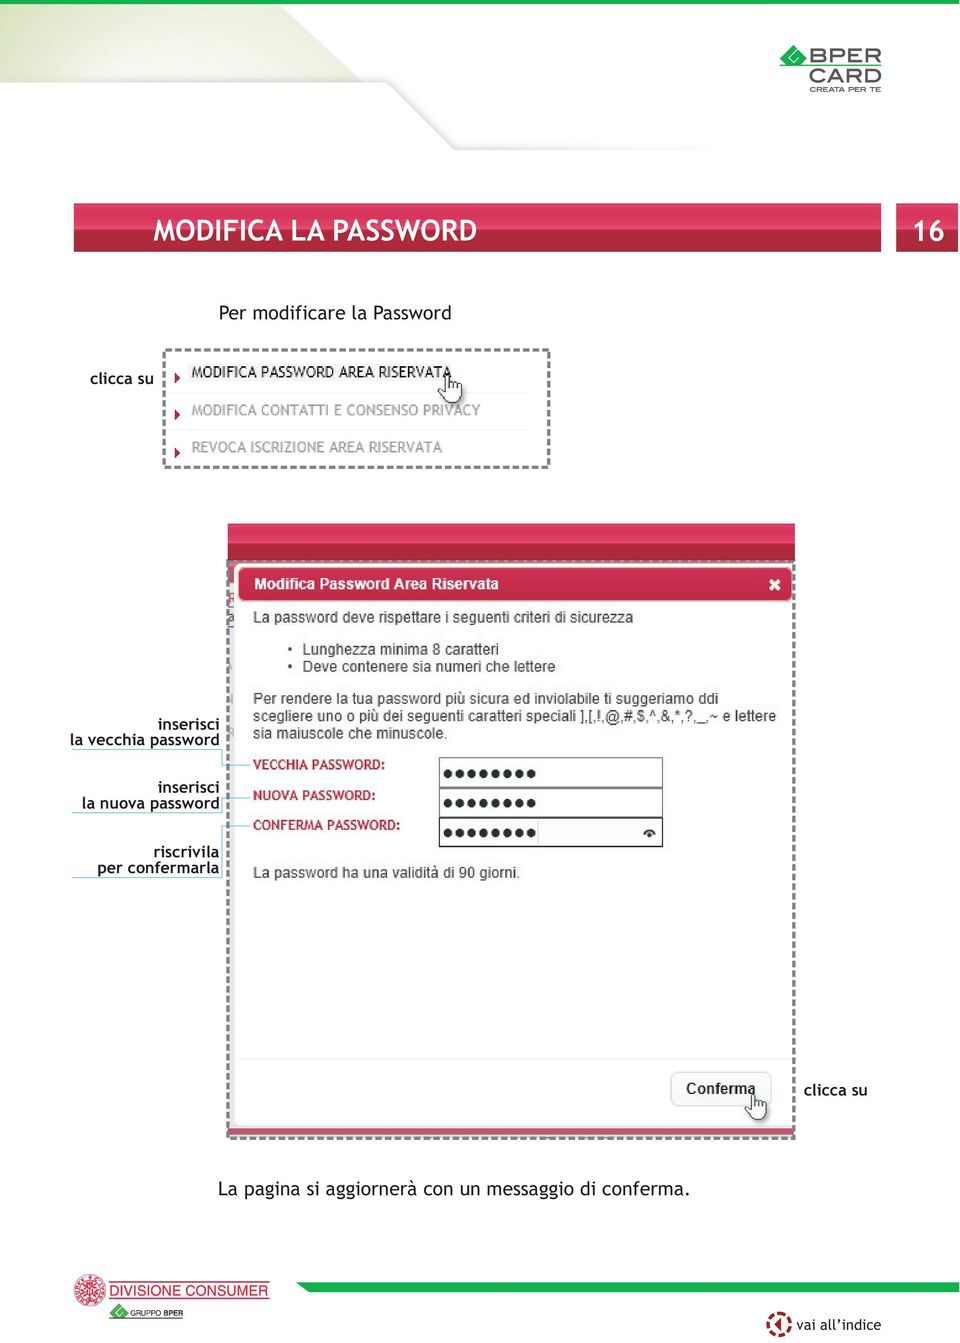 inserisci la nuova password riscrivila per